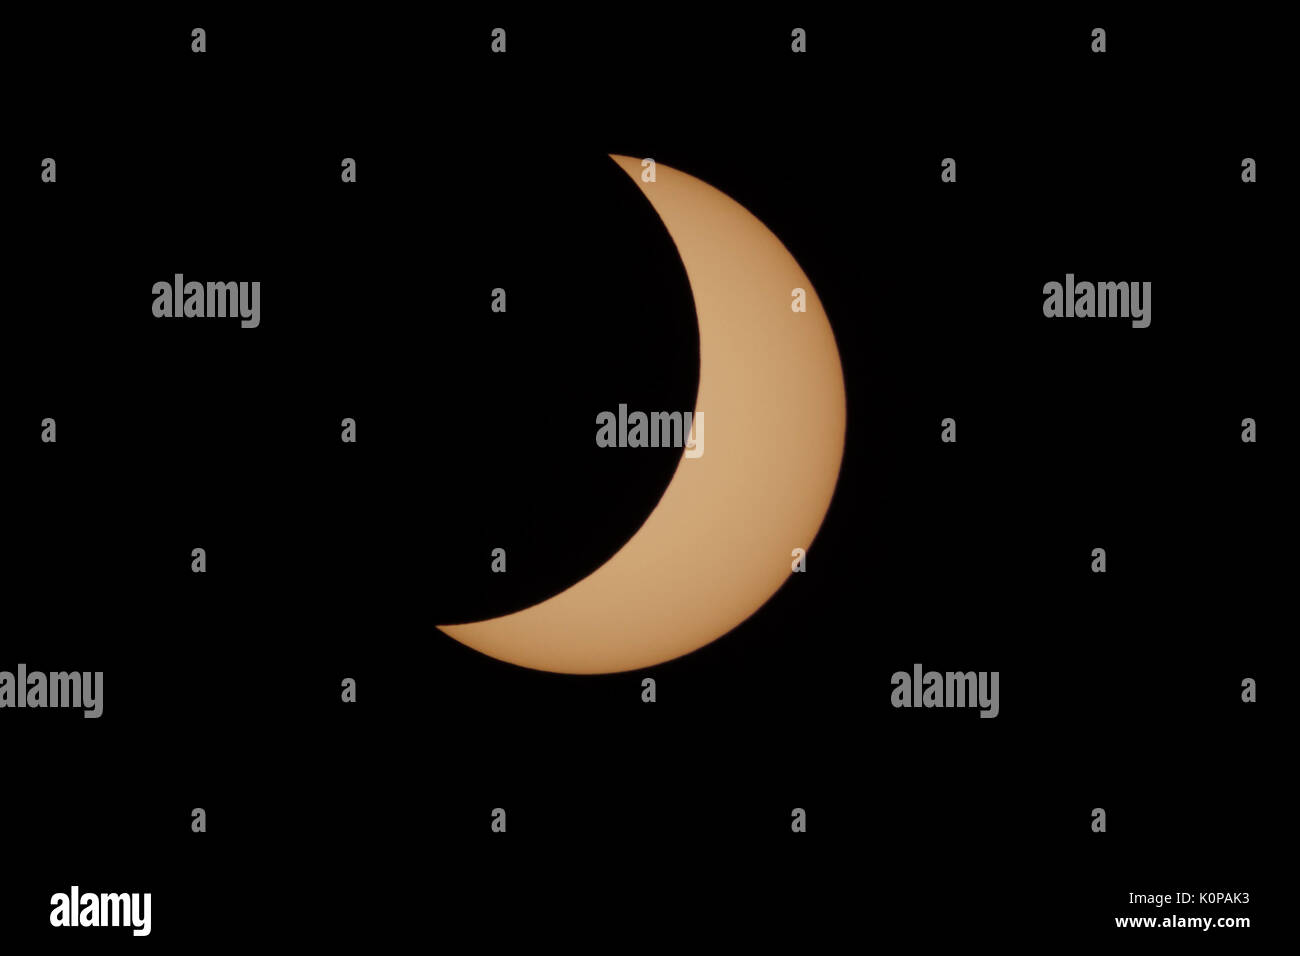 Ein Halbmond Sonne in der zweiten partiellen eclipse Phase der großen amerikanischen Eclipse am 21. August 2017 sichtbar ist. Stockfoto